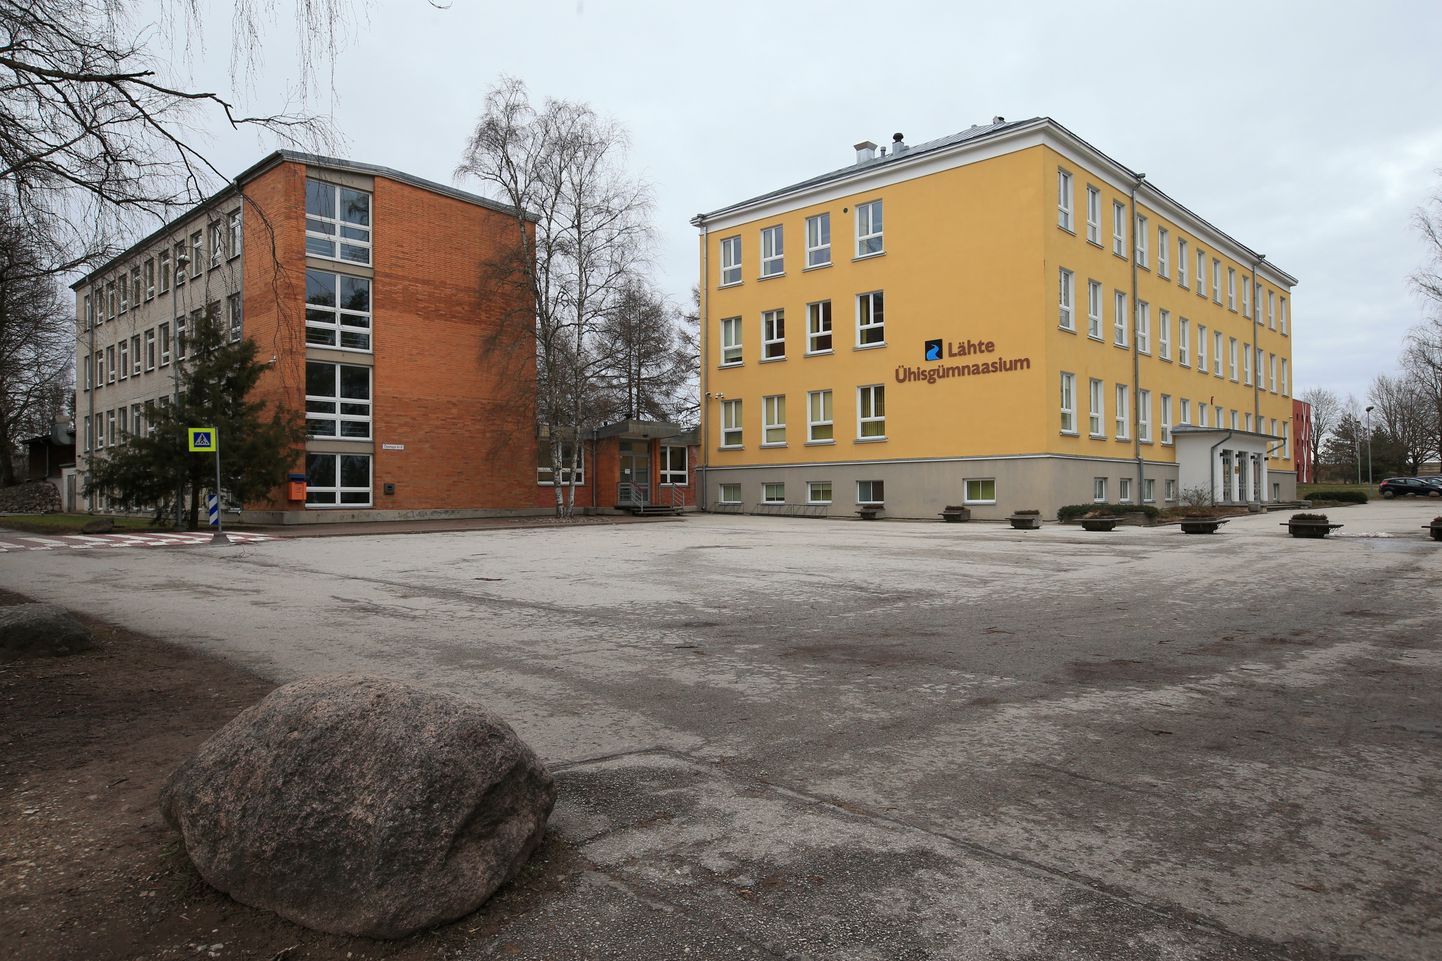 Tartu vallavalitsus kuulutas välja ideekonkursi parima arhitektuurse lahenduse leidmiseks Lähte Ühisgümnaasiumi õppehoone juurdeehitusele ja kooli ümbritsevale välialale. Pildil Lähte Ühisgümnaasium.